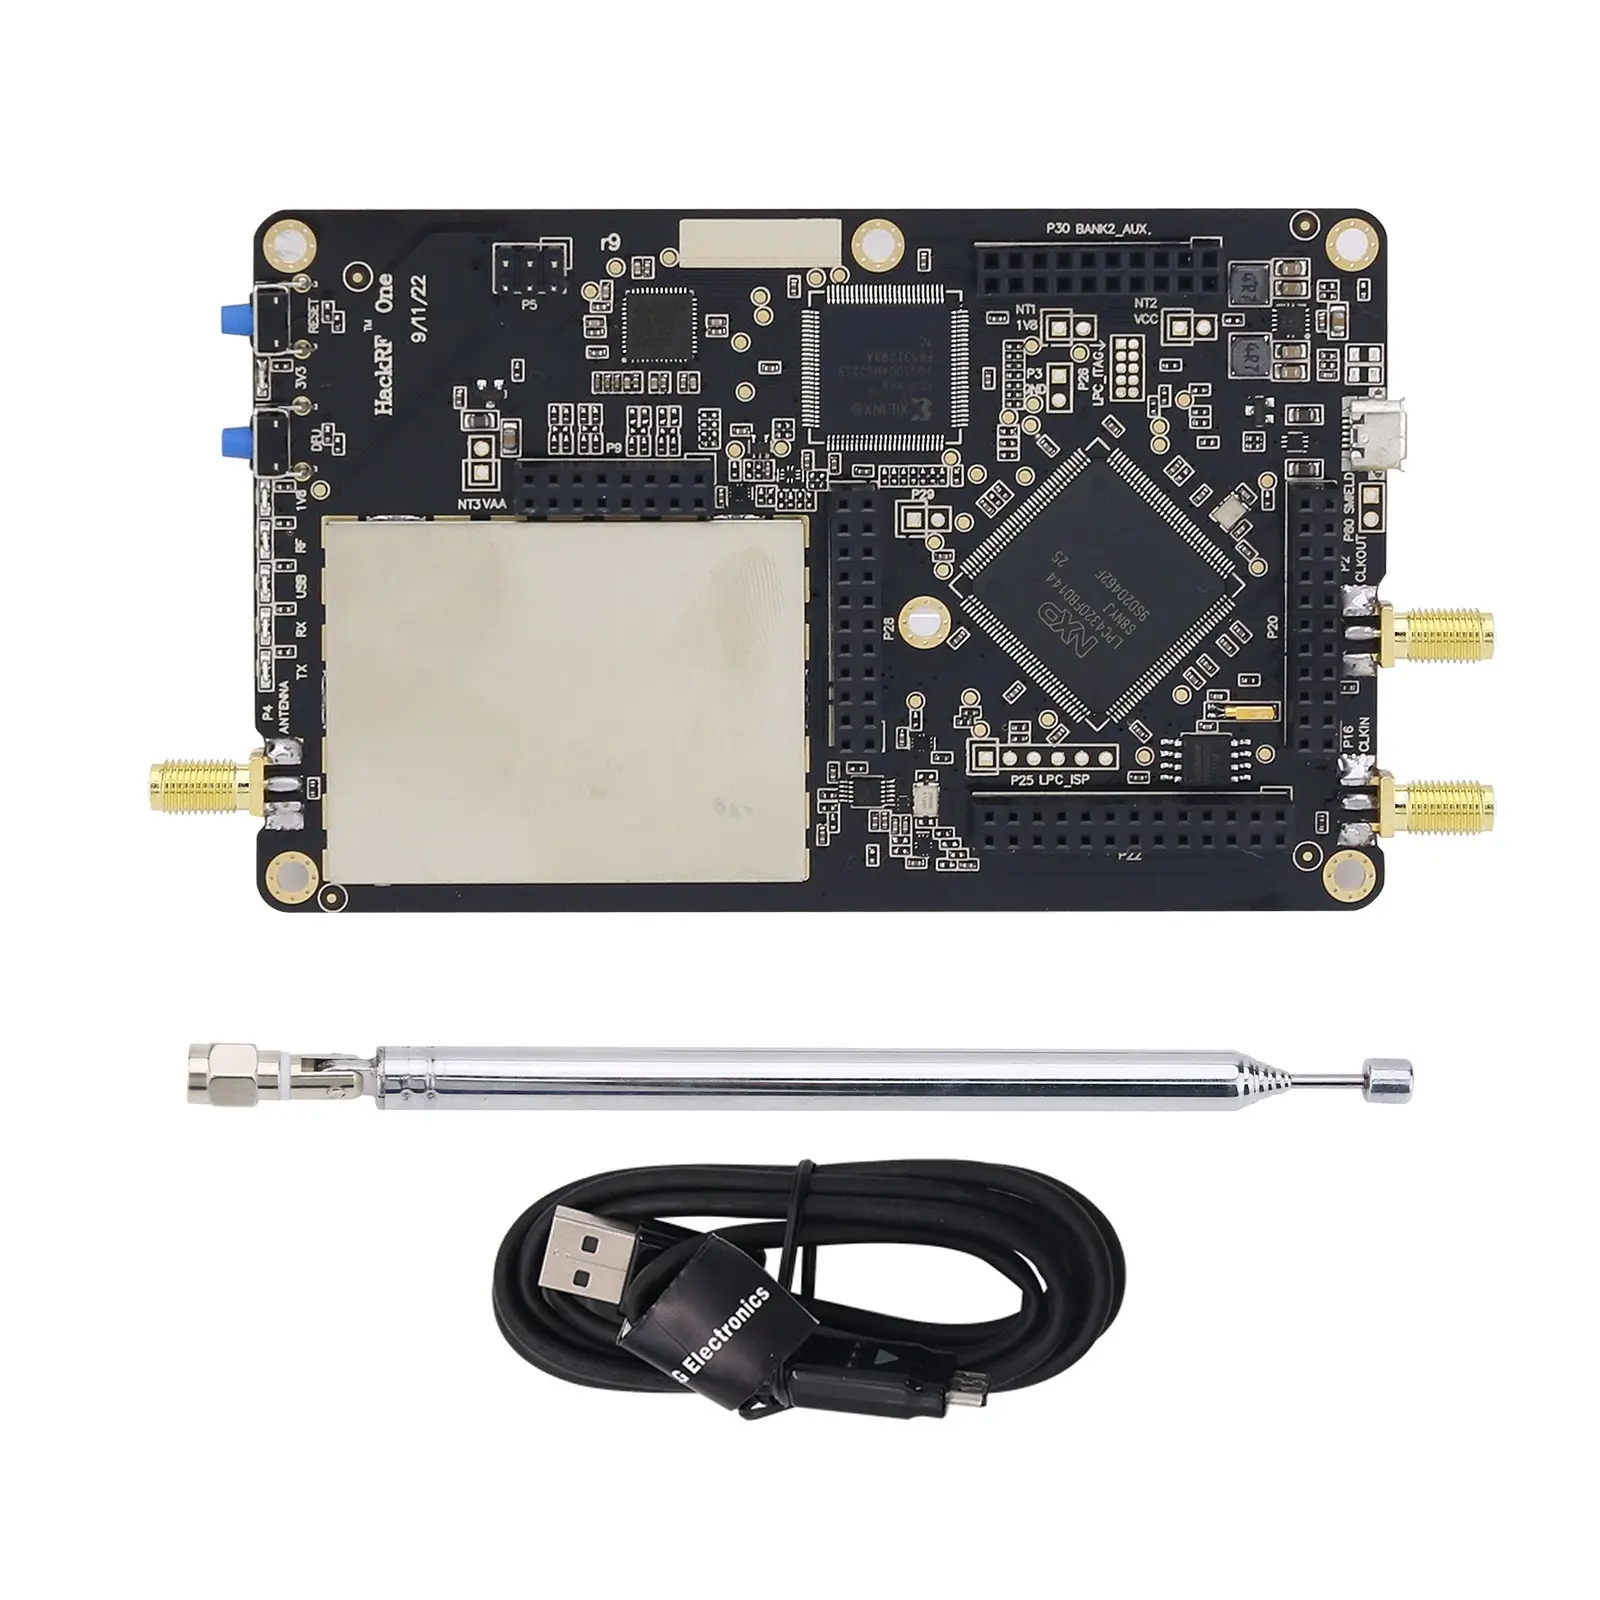 1MHz-6GHz HackRF One R9 V2.0.0 Software Defined Placa de Desenvolvimento de Rádio, Antena e Kit de Cabos de Dados